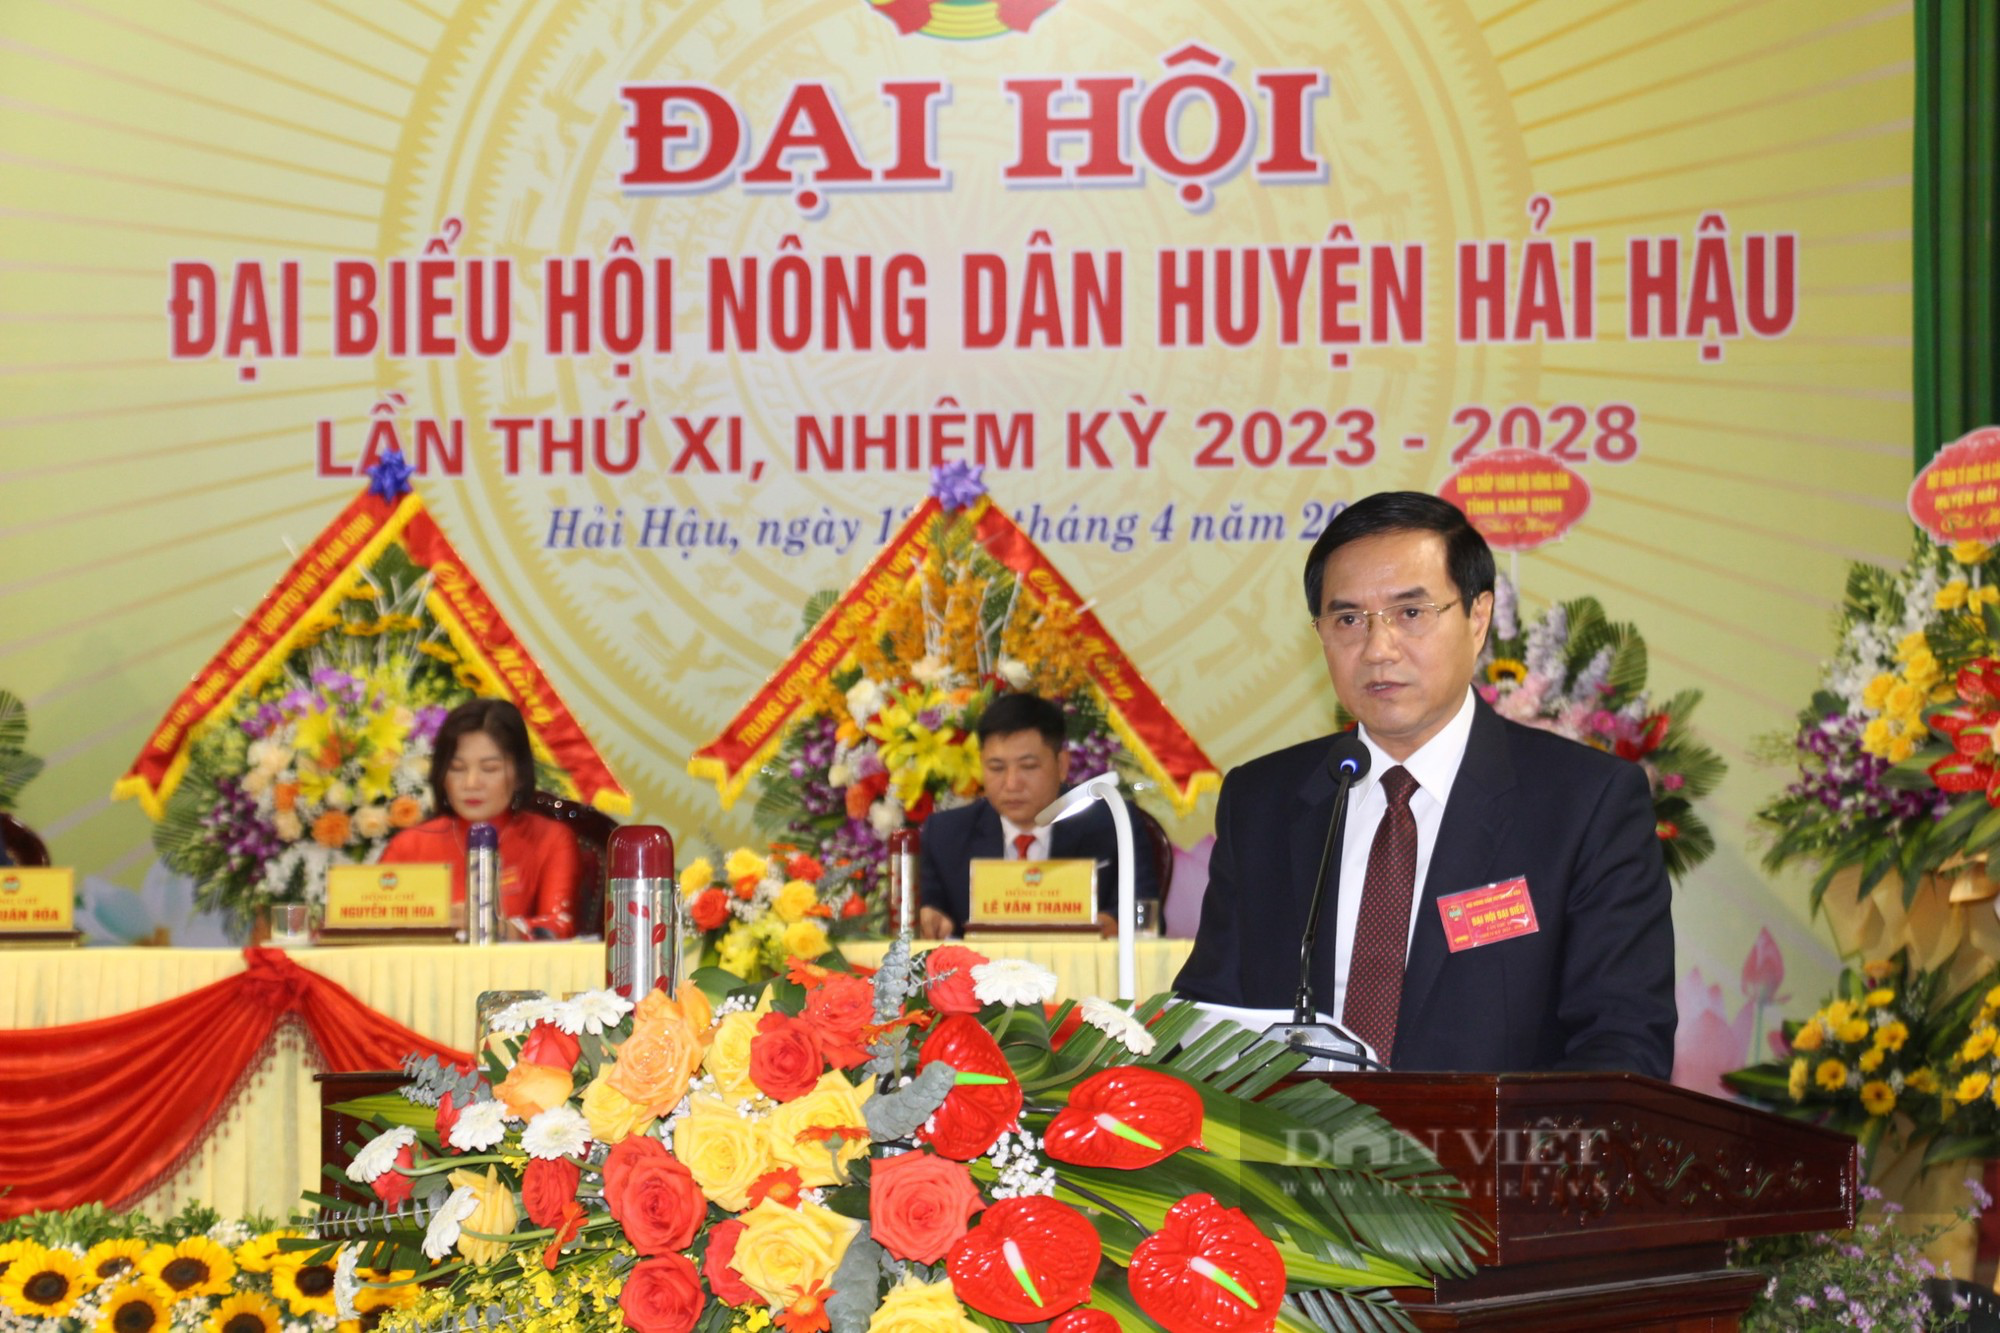 Lãnh đạo Trung ương Hội Nông dân Việt Nam dự Đại hội Hội Nông dân huyện Hải Hậu, Nam Định - Ảnh 6.